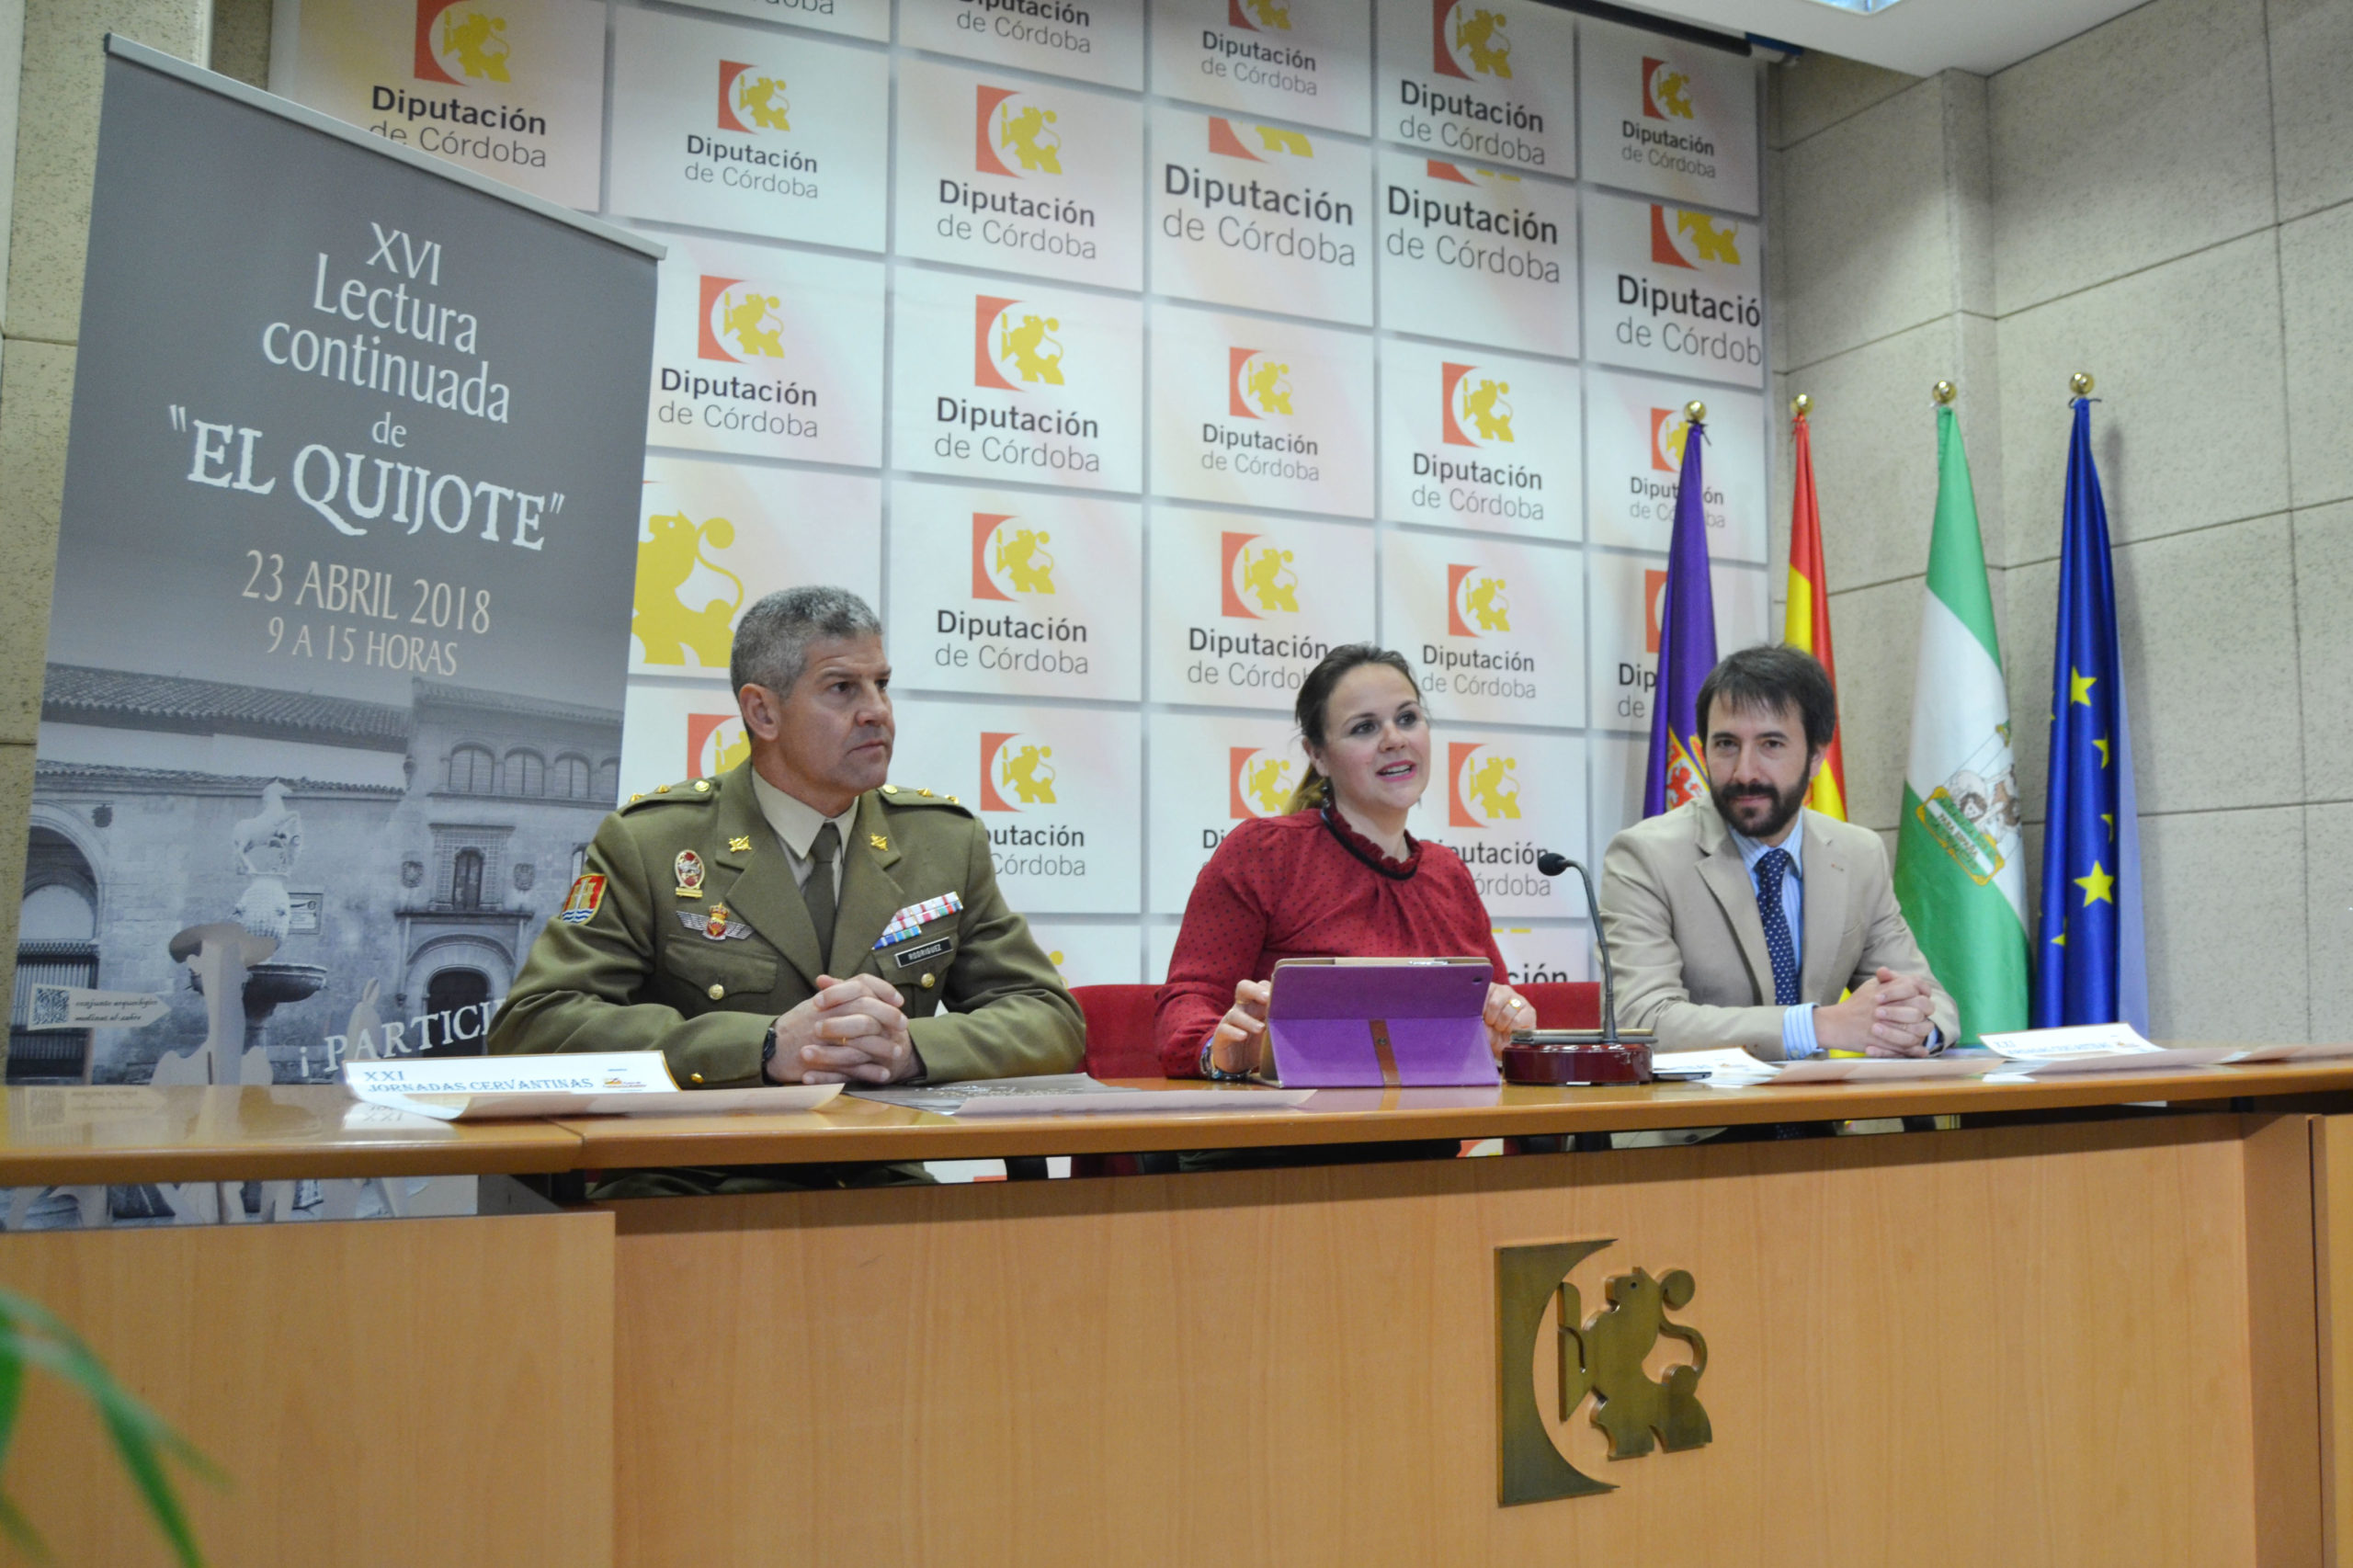 Córdoba celebra el Día del Libro con una nueva edición de la lectura continuada de El Quijote.